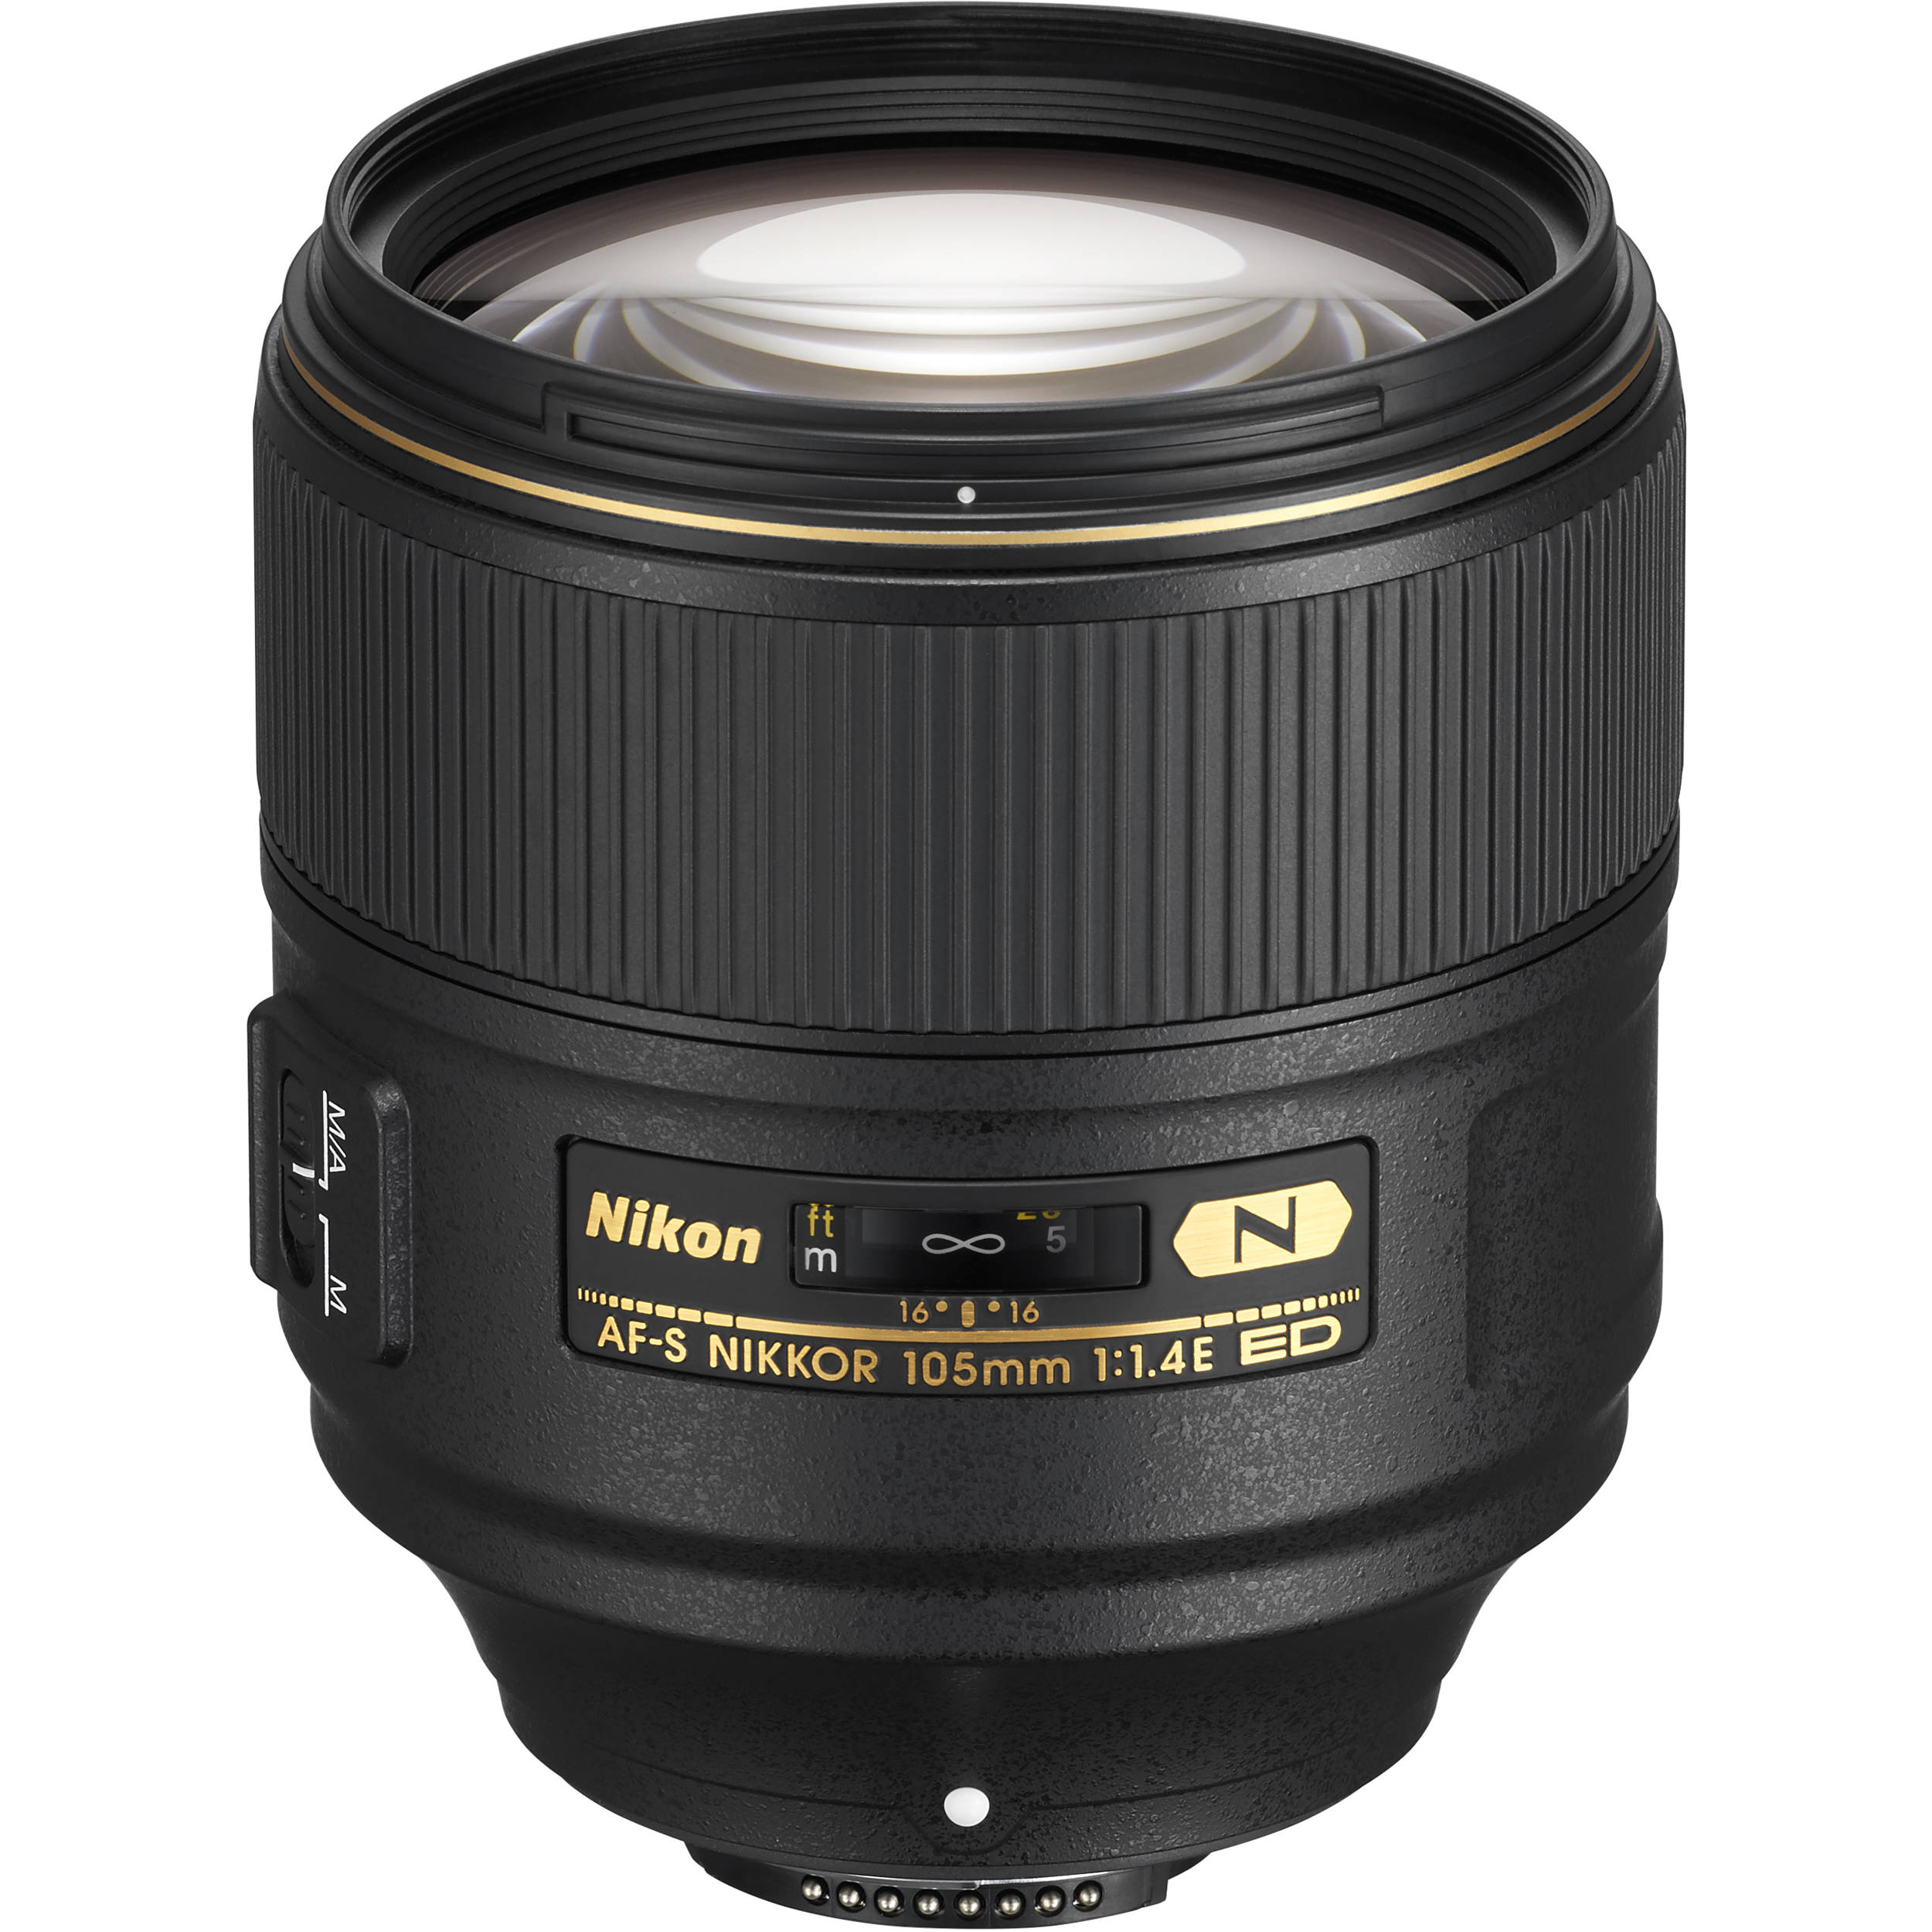 Nikon Af S Nikkor 105mm F 1 4e Ed Lens 064 B H Photo Video